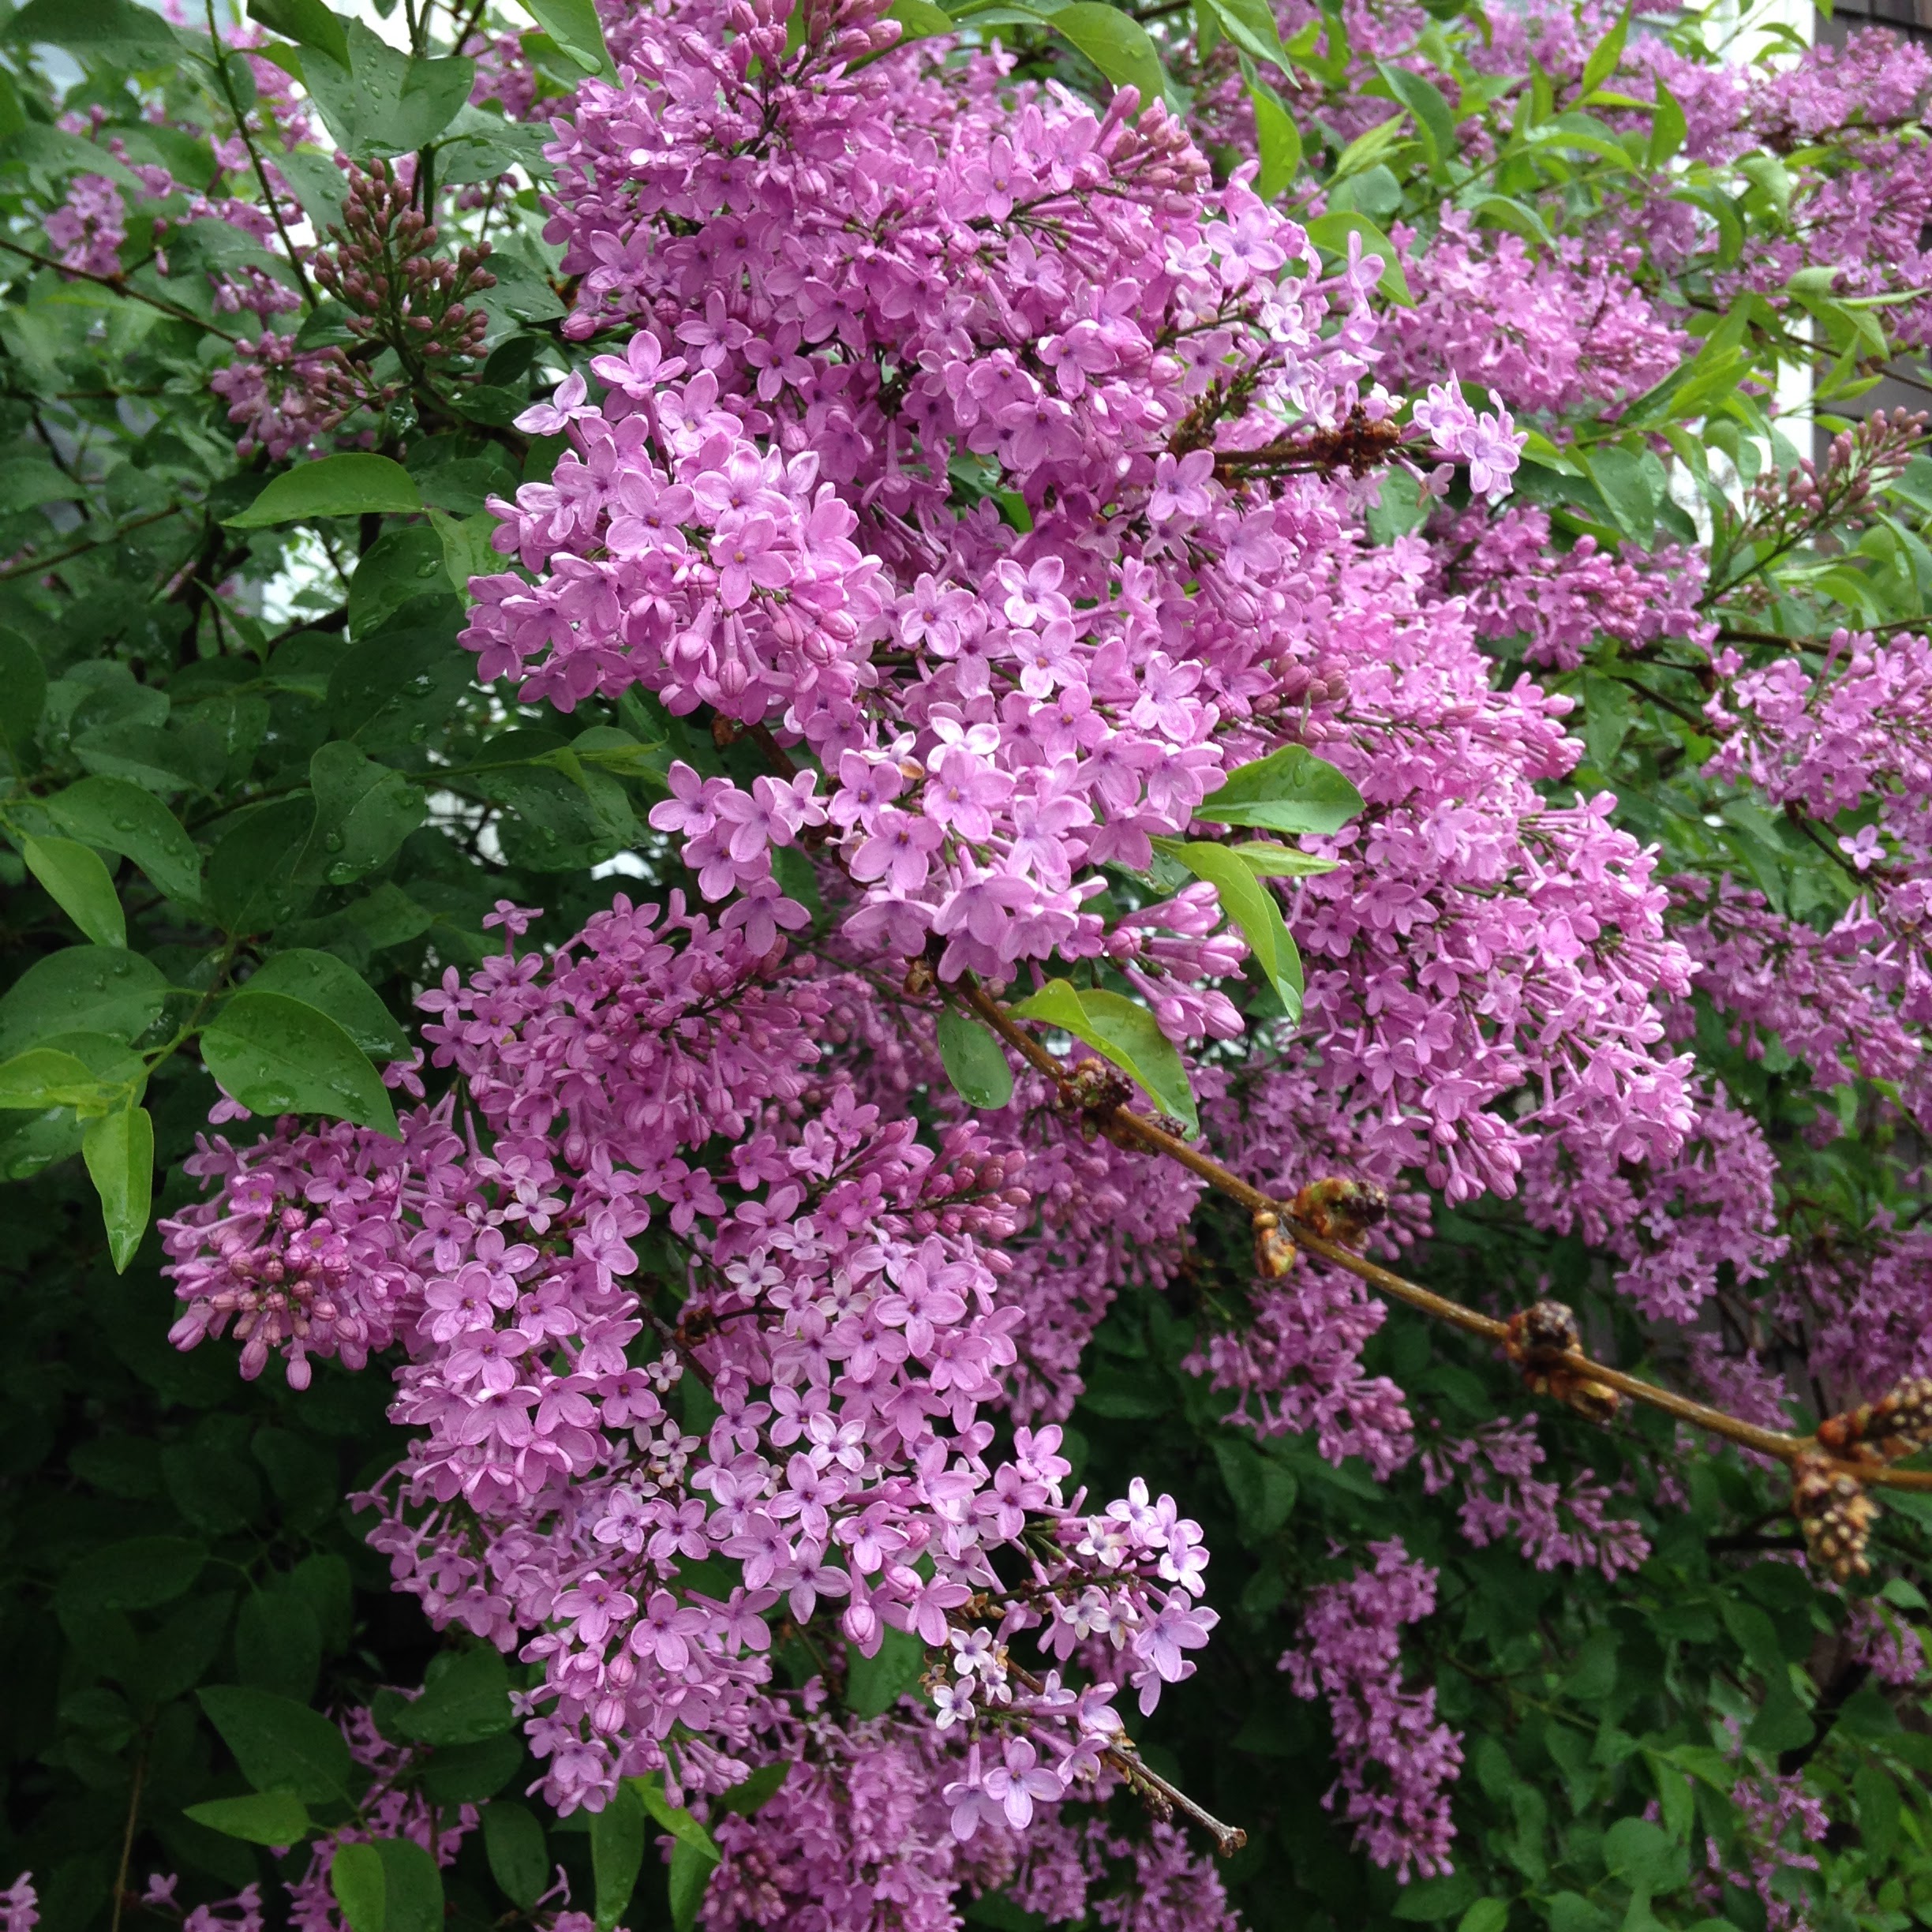 lilacs may